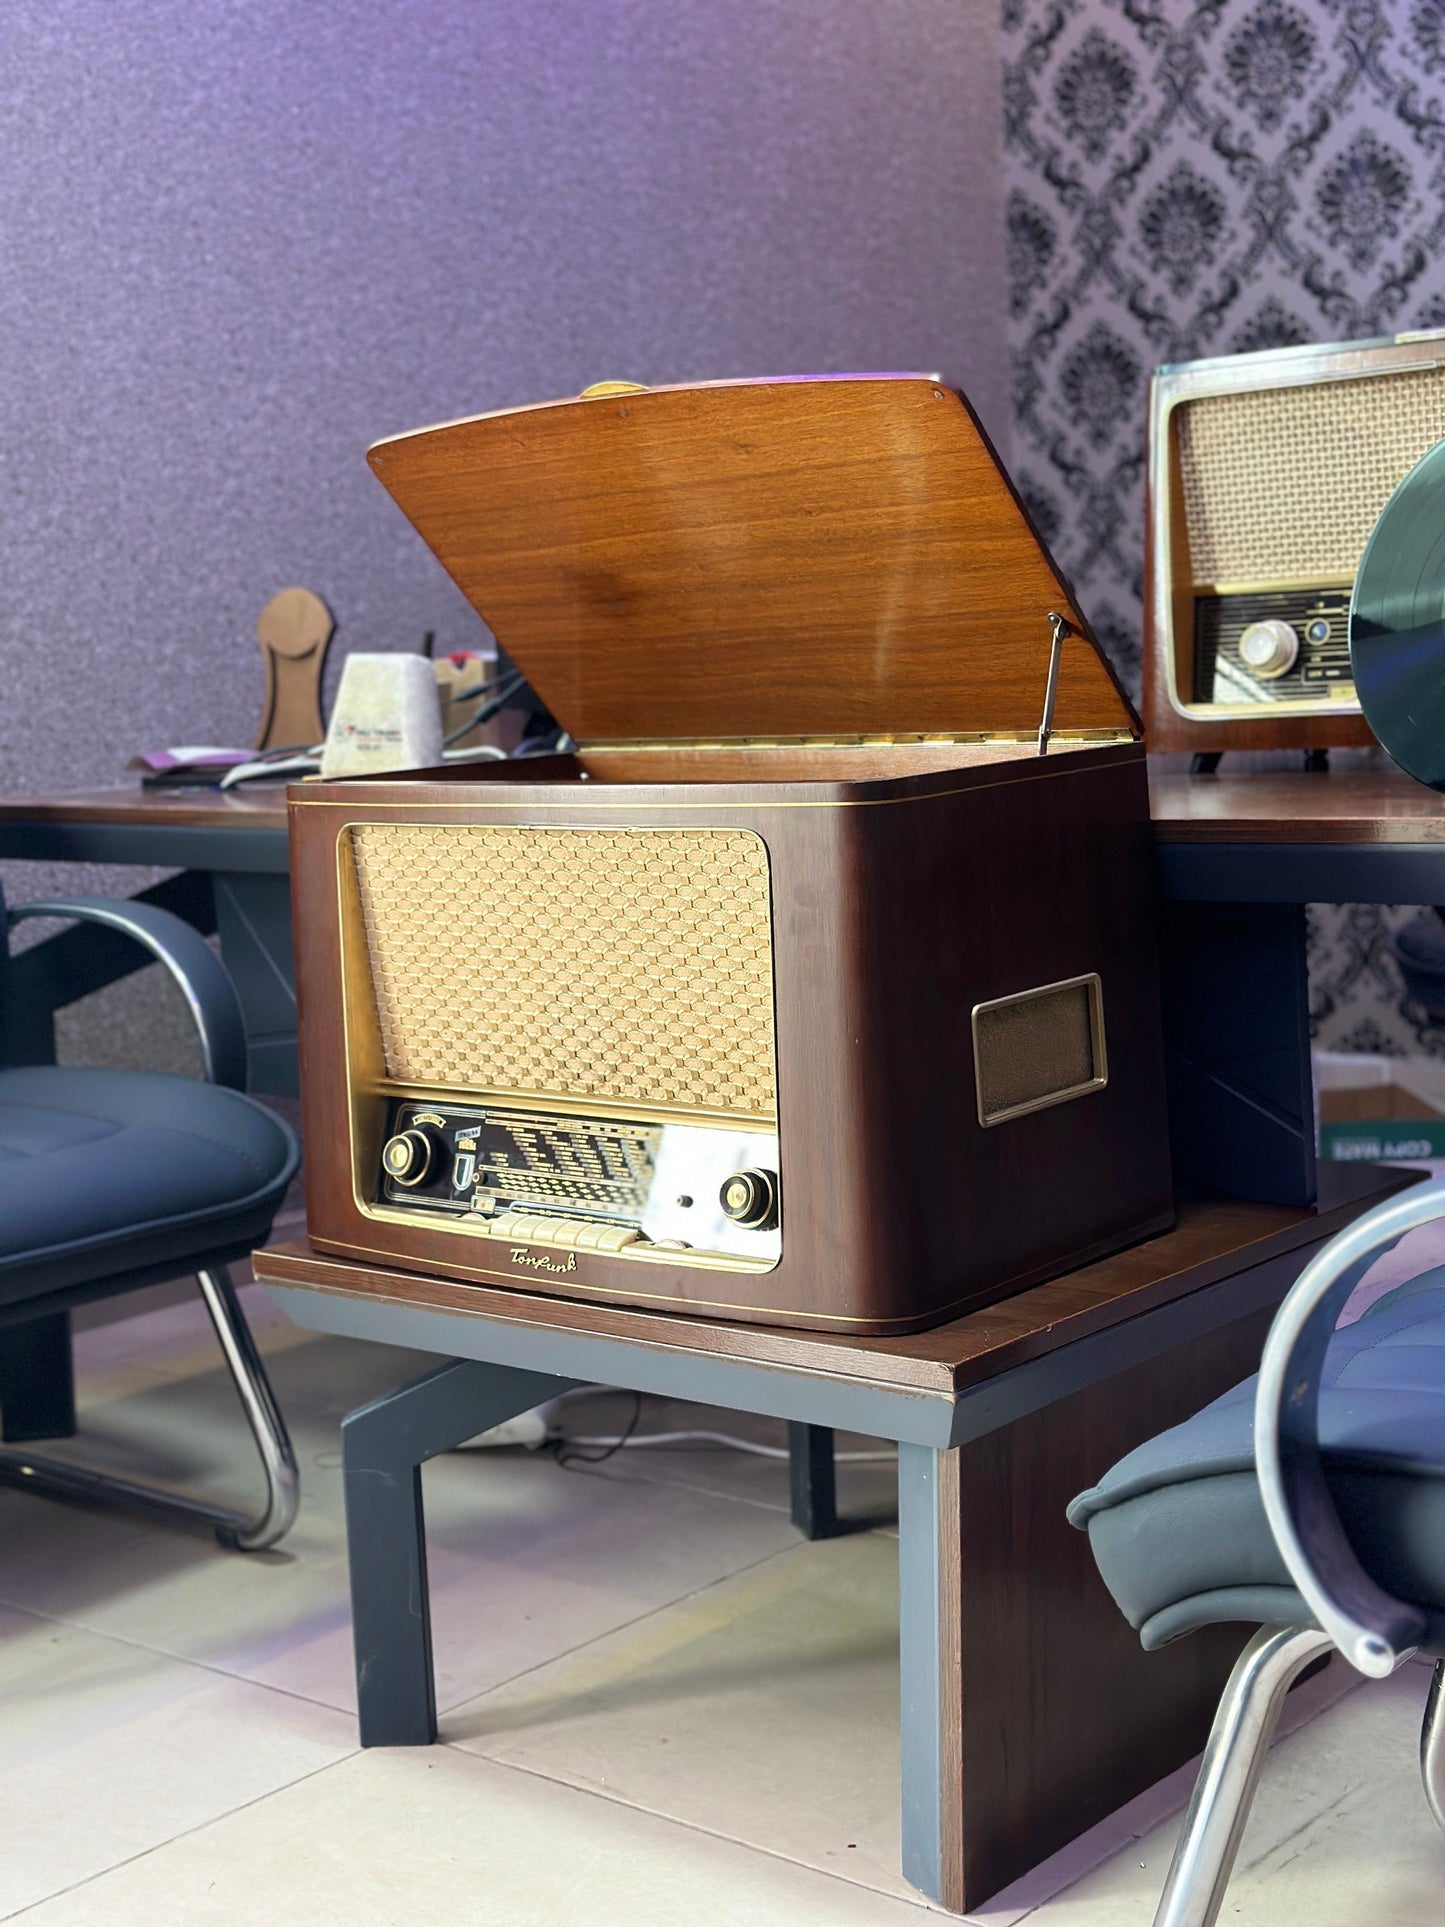 Tonfunk | Vintage Radio | Orjinal Old Radio | Antique Radio | Lamp Radio | Tonfunk Radio